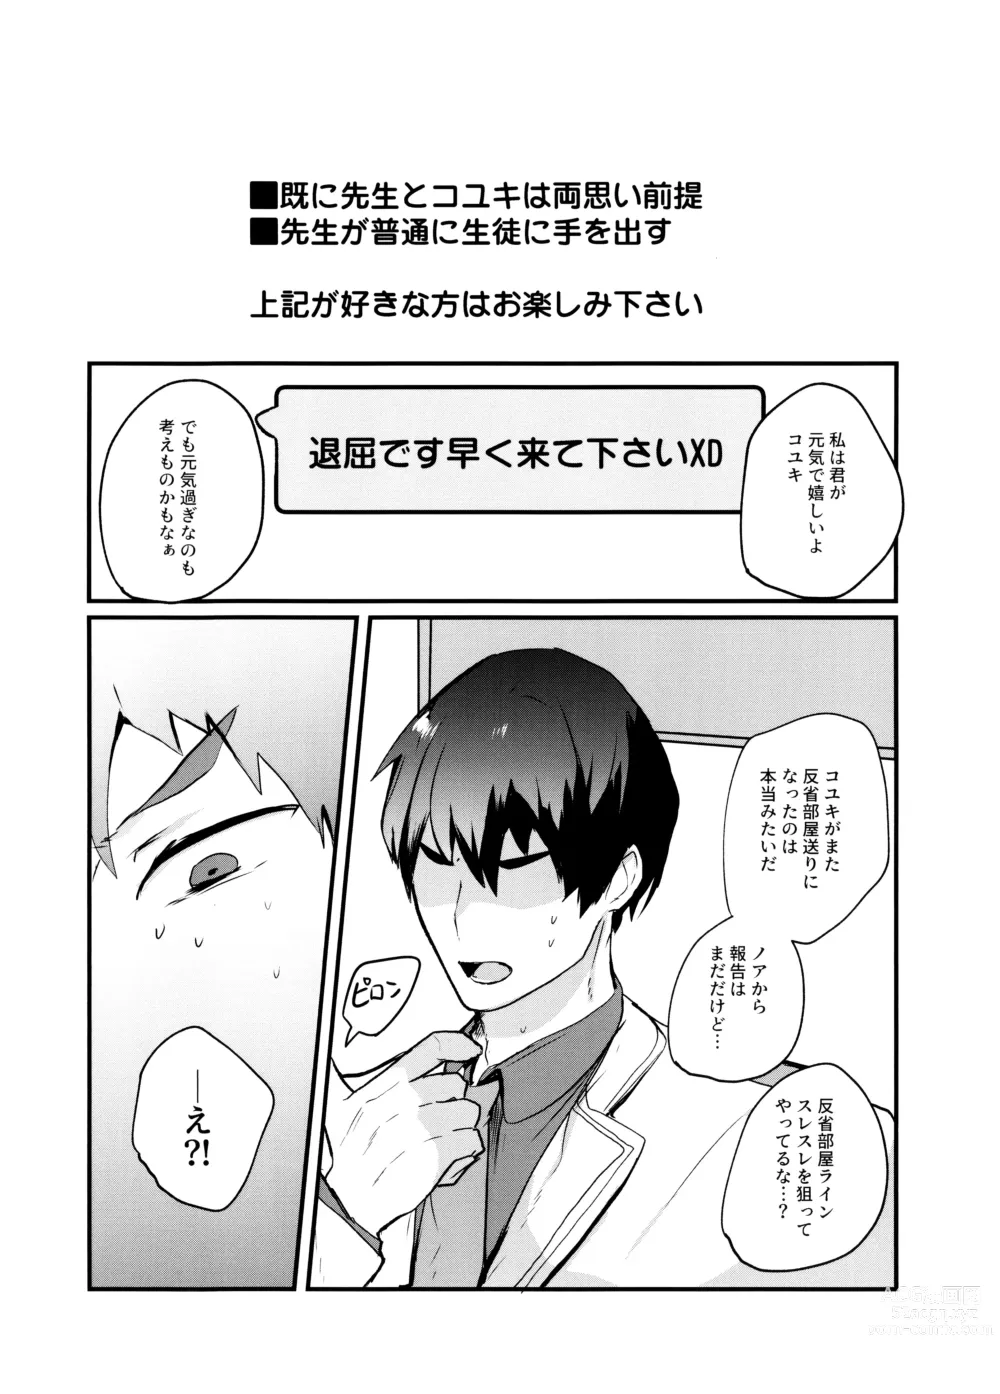 Page 2 of doujinshi Kouiu Koyuki mo Dou desu ka?!